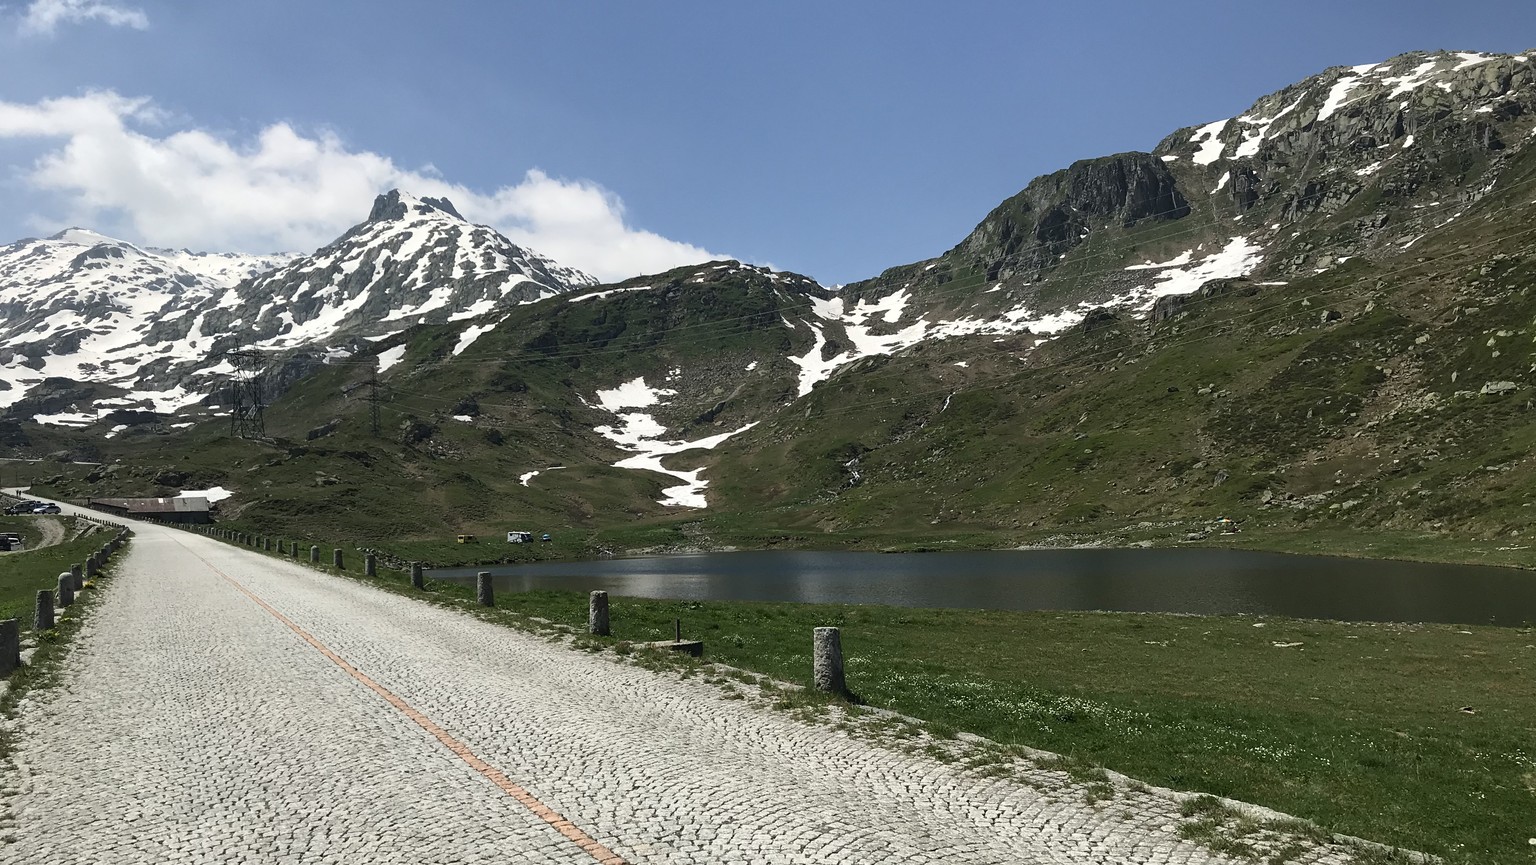 Gotthardpass